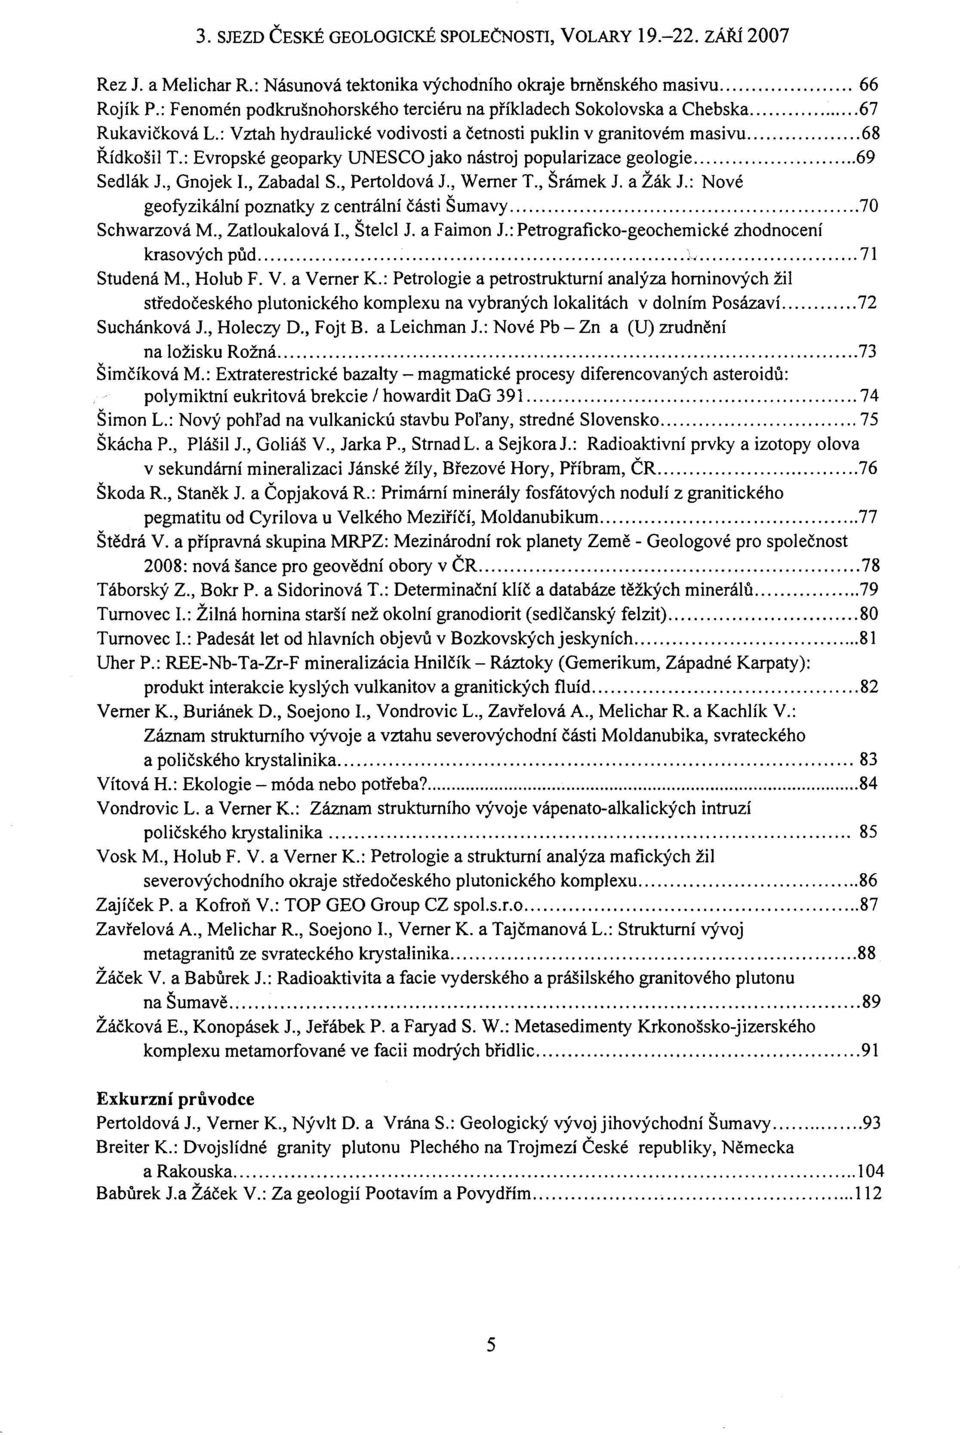 , Werner T., Šrámek J. a Žák J.: Nové geofyzikální poznatky z centrální části Šumavy 70 Schwarzová M., Zatloukalová I., Štelcl J. a Faimon J.